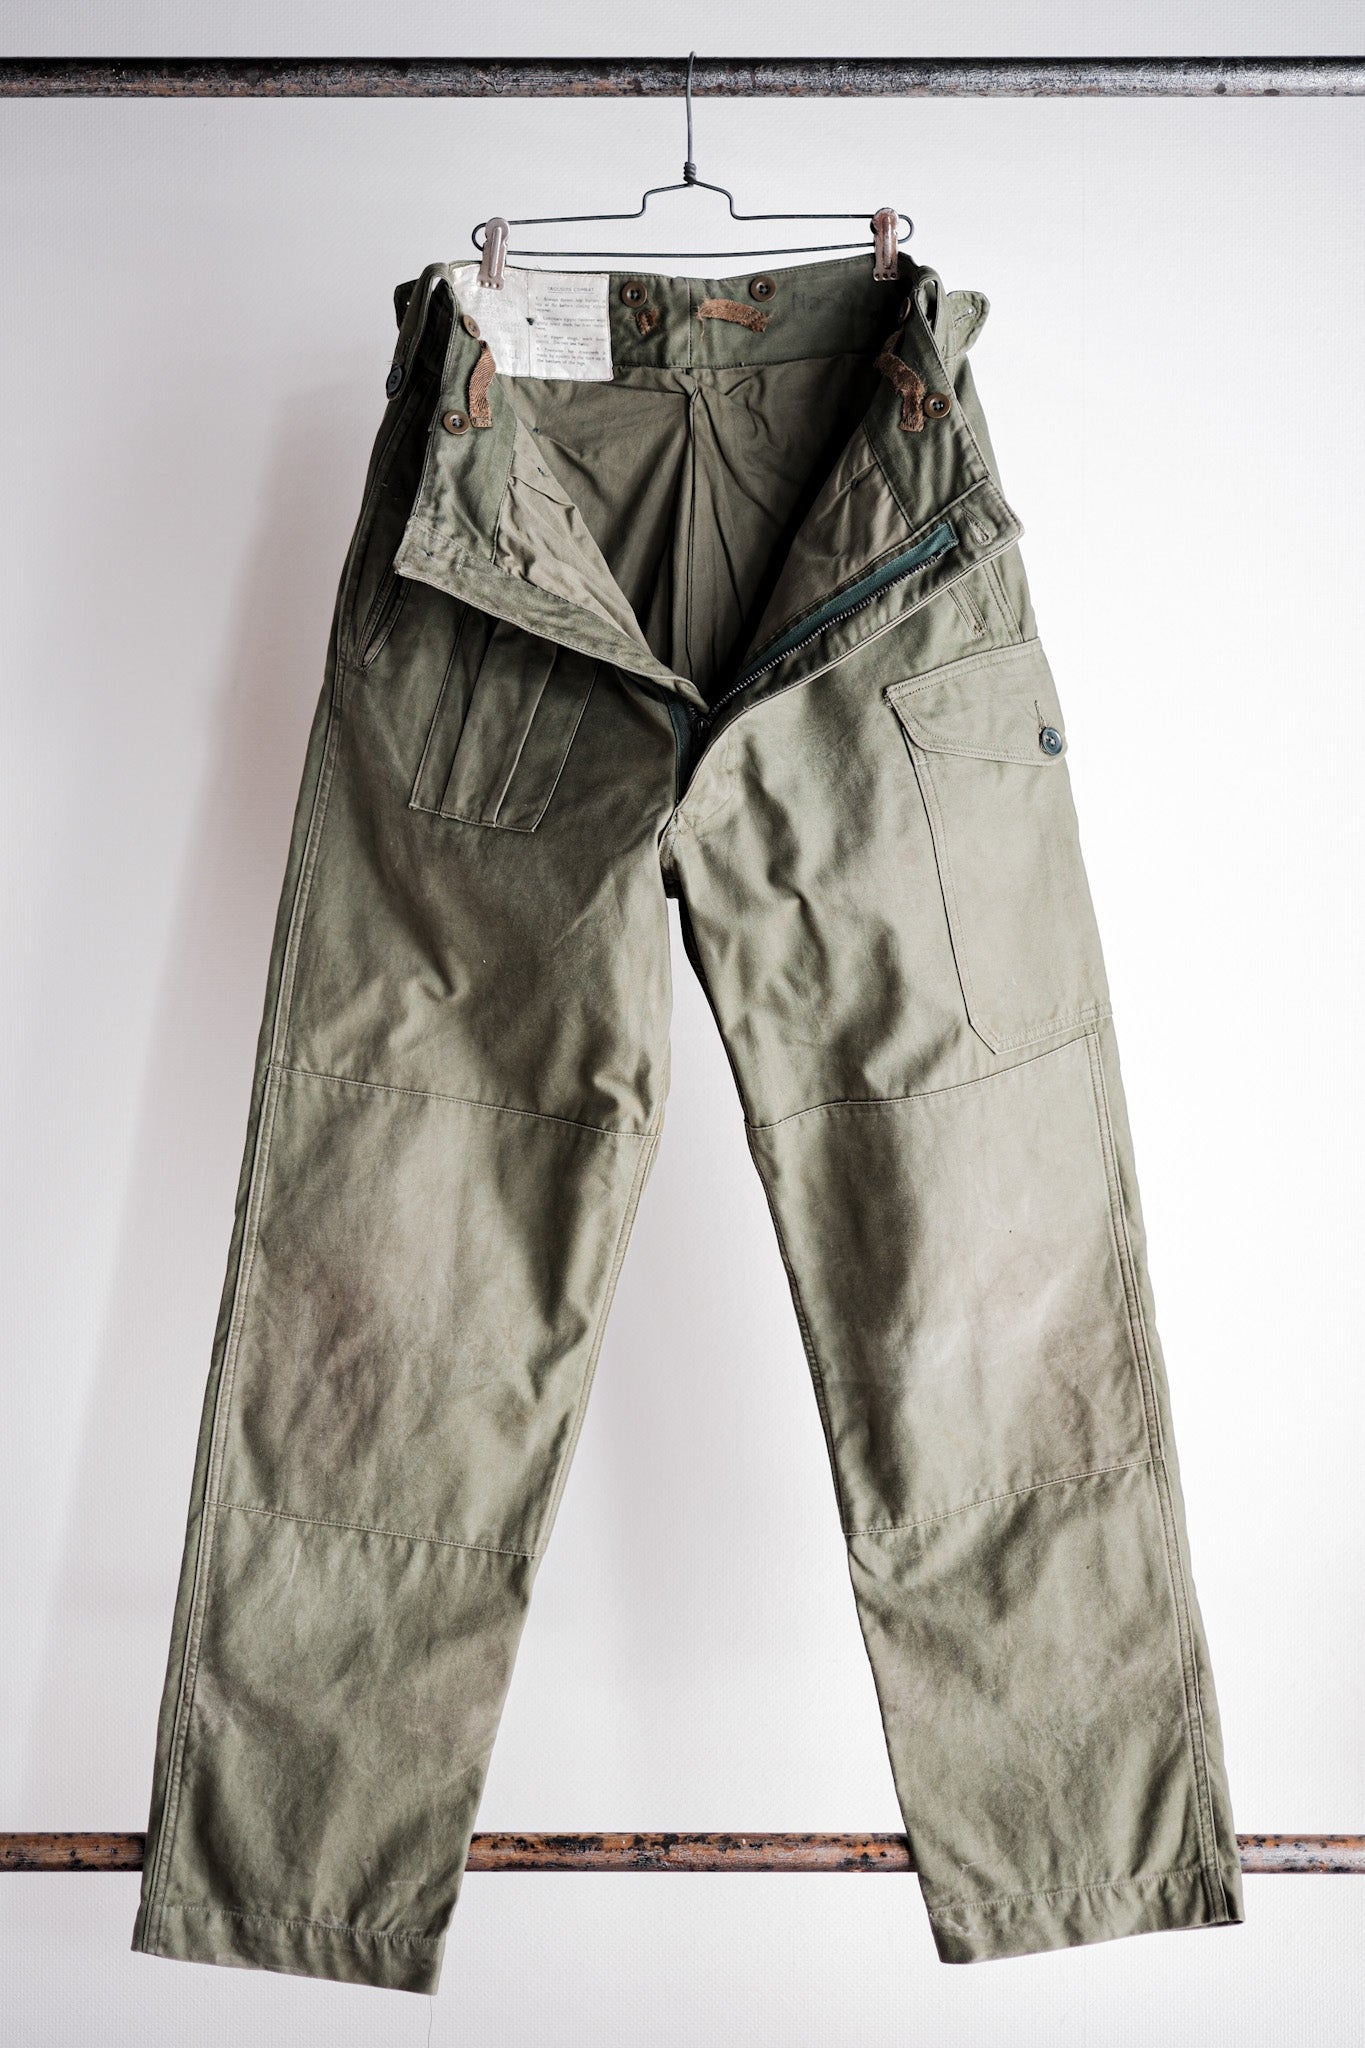 [〜60年代]英國軍隊1960年的圖案戰鬥褲尺寸。4